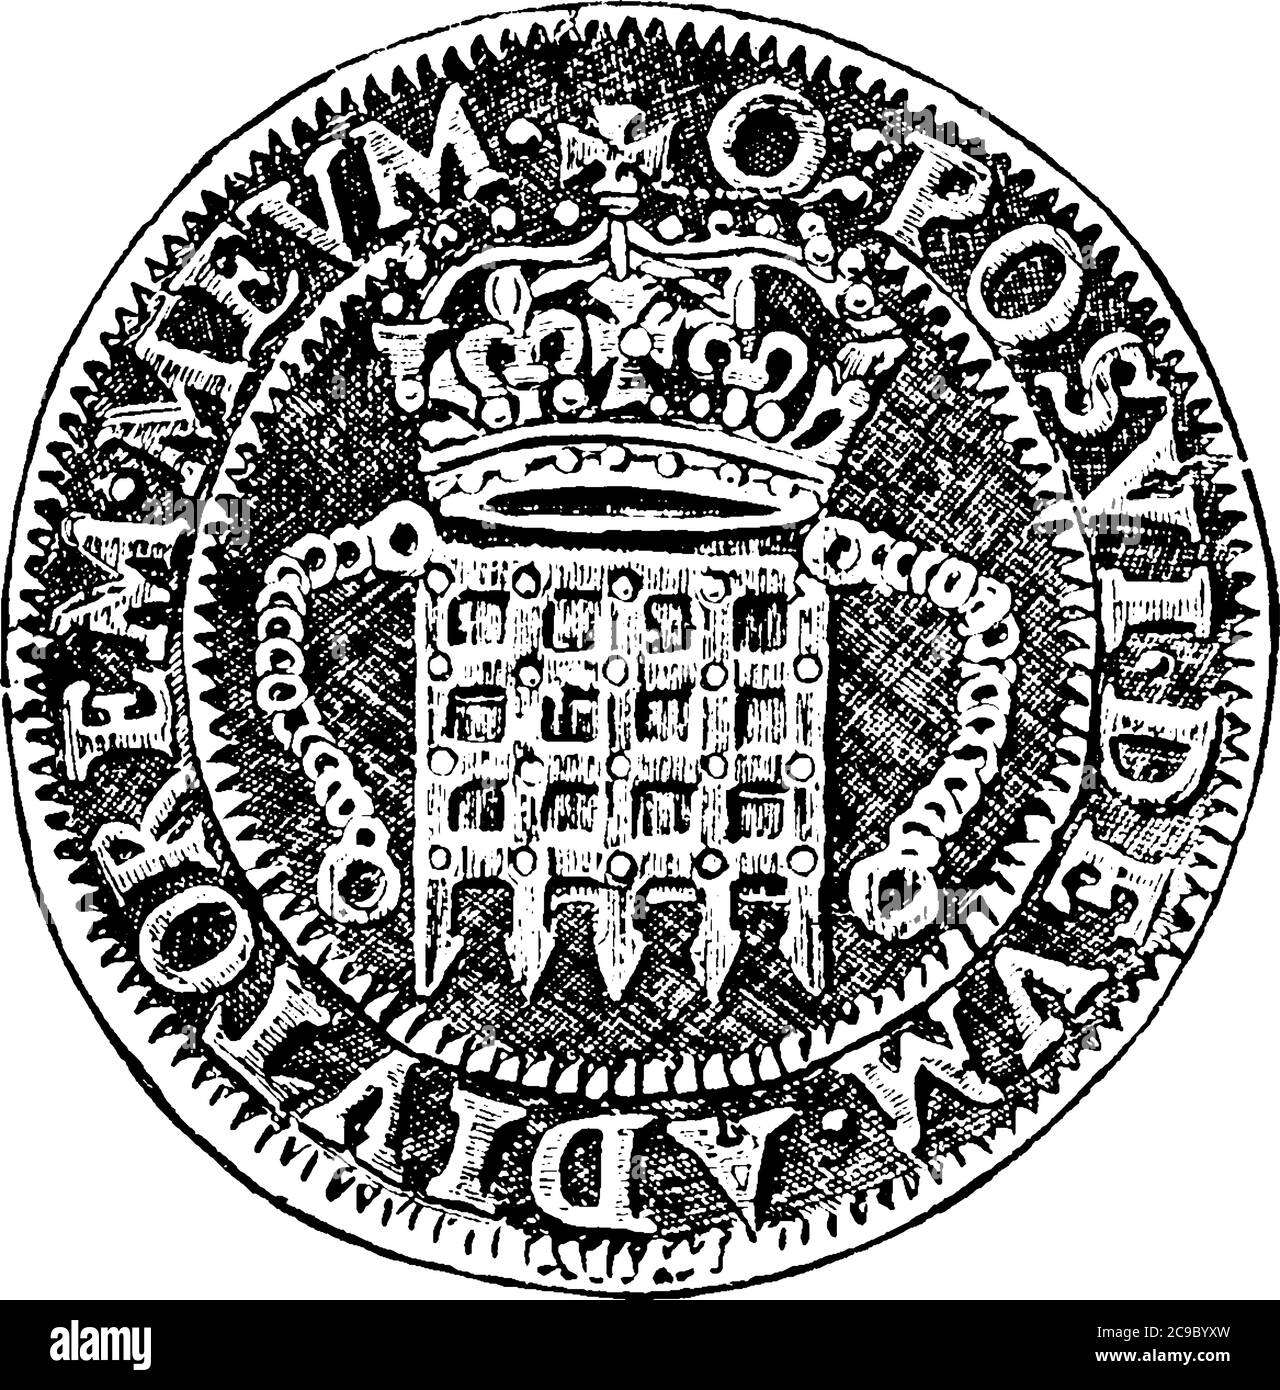 Eine typische Darstellung der Münze geprägt in der Regierungszeit von Königin Elizabeth, eingebettet mit einem Bild, das Krone und hat einige Schriften darauf, vintage l Stock Vektor